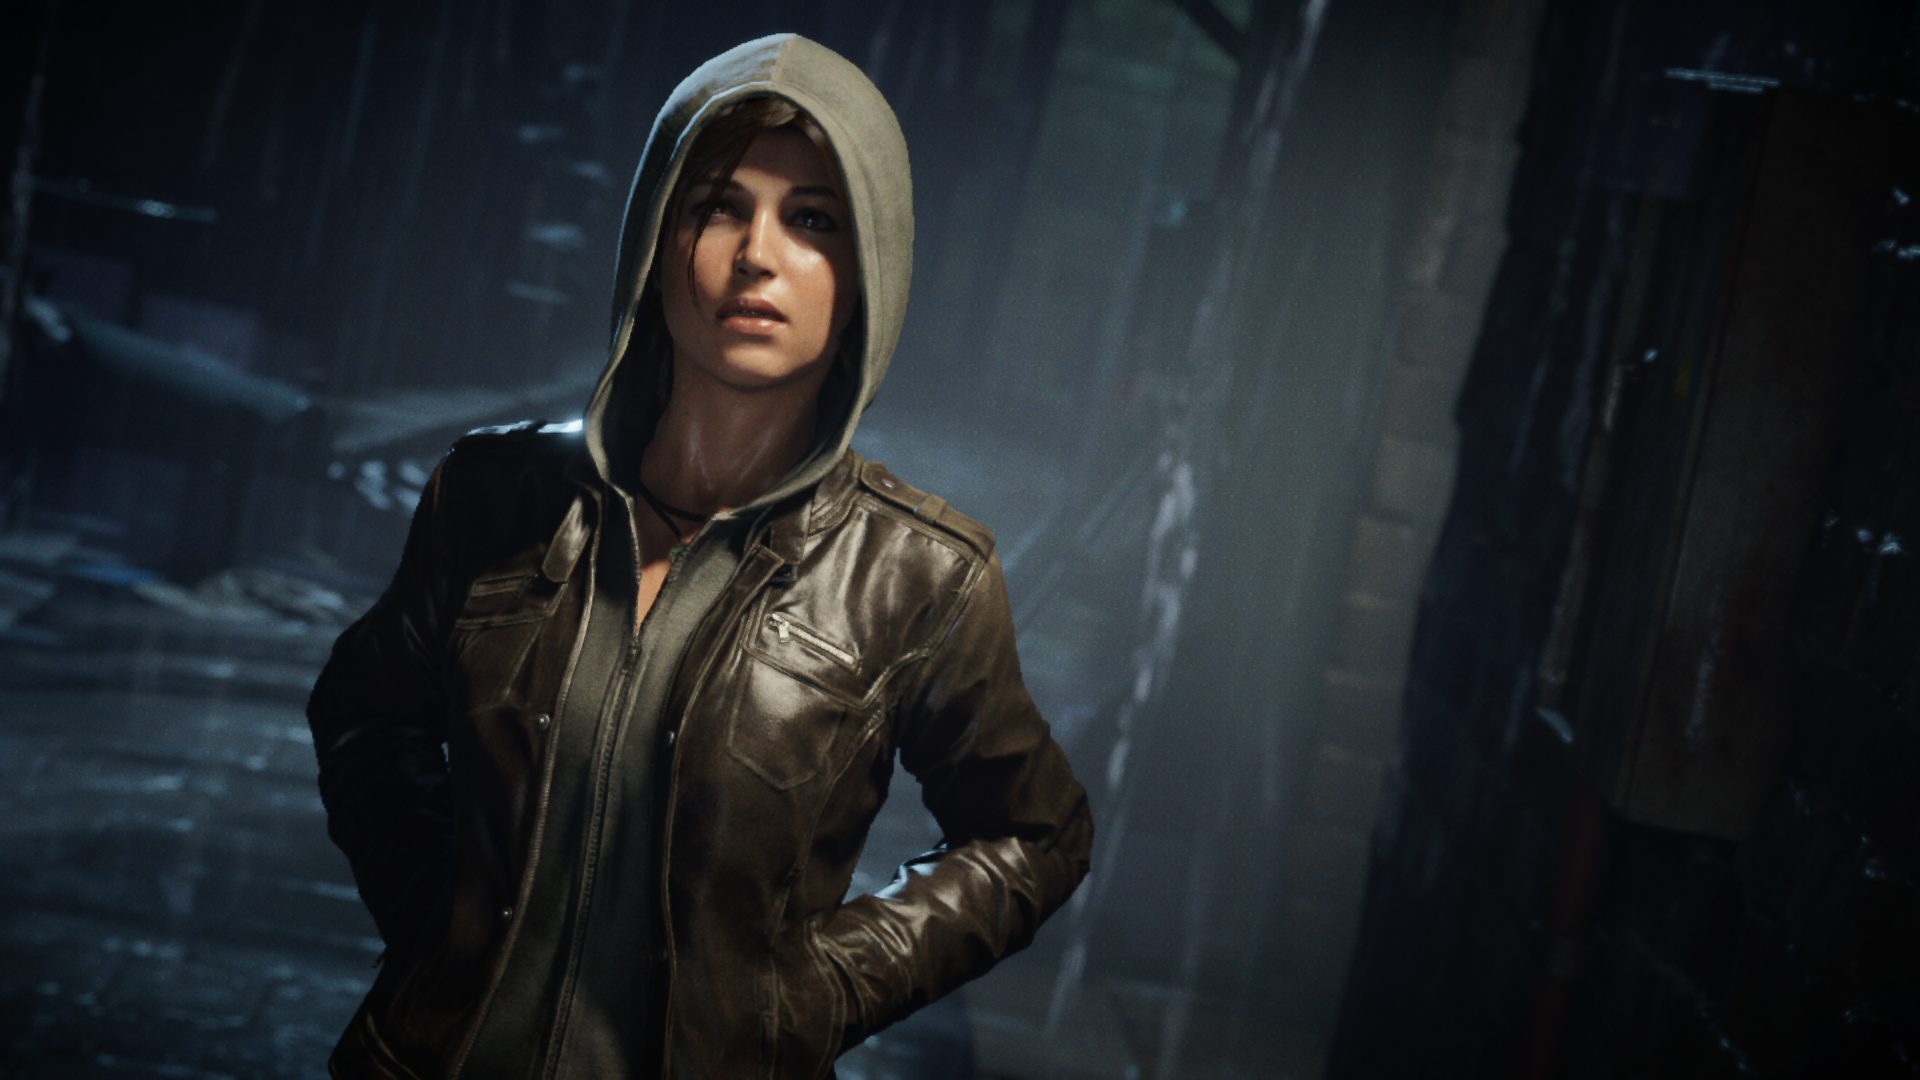 Lara upplever mycket under resans gång - precis som spelaren. Crystal Dynamics har verkligen lyckats med en värdig uppföljare.